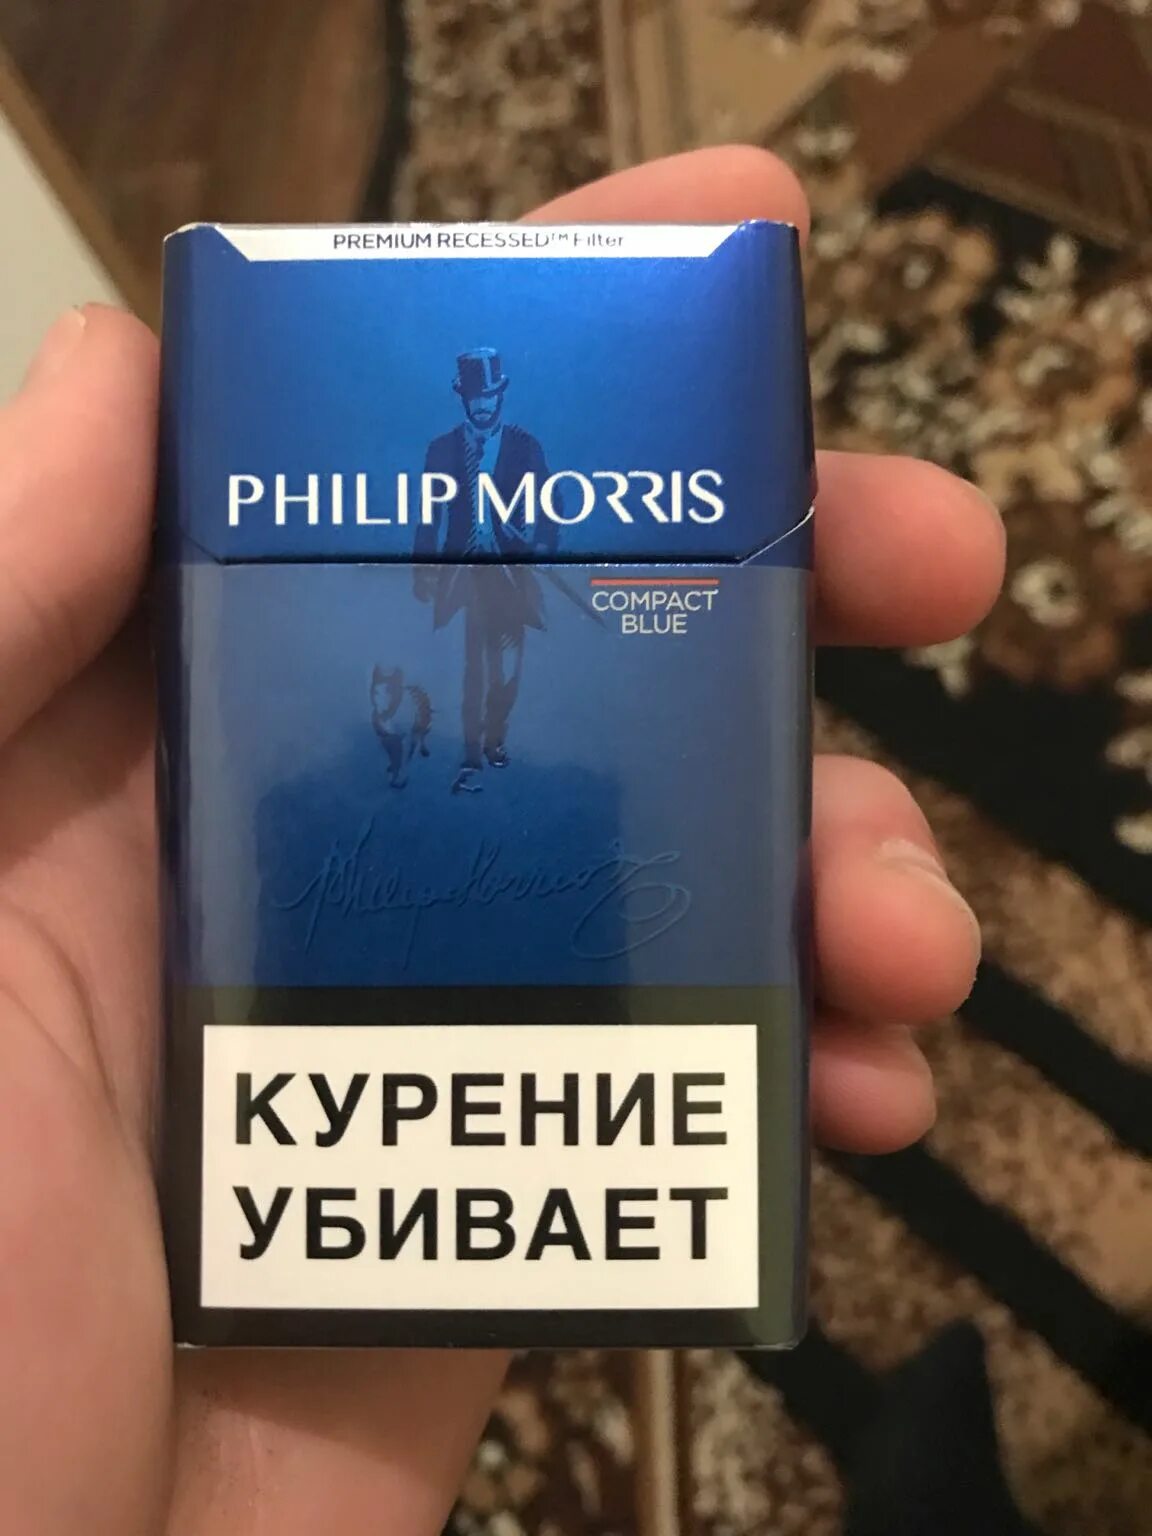 Филипс Морис компакт Блю. Сигареты с фильтром "Philip Morris Compact Blue". Блю компакт сигареты